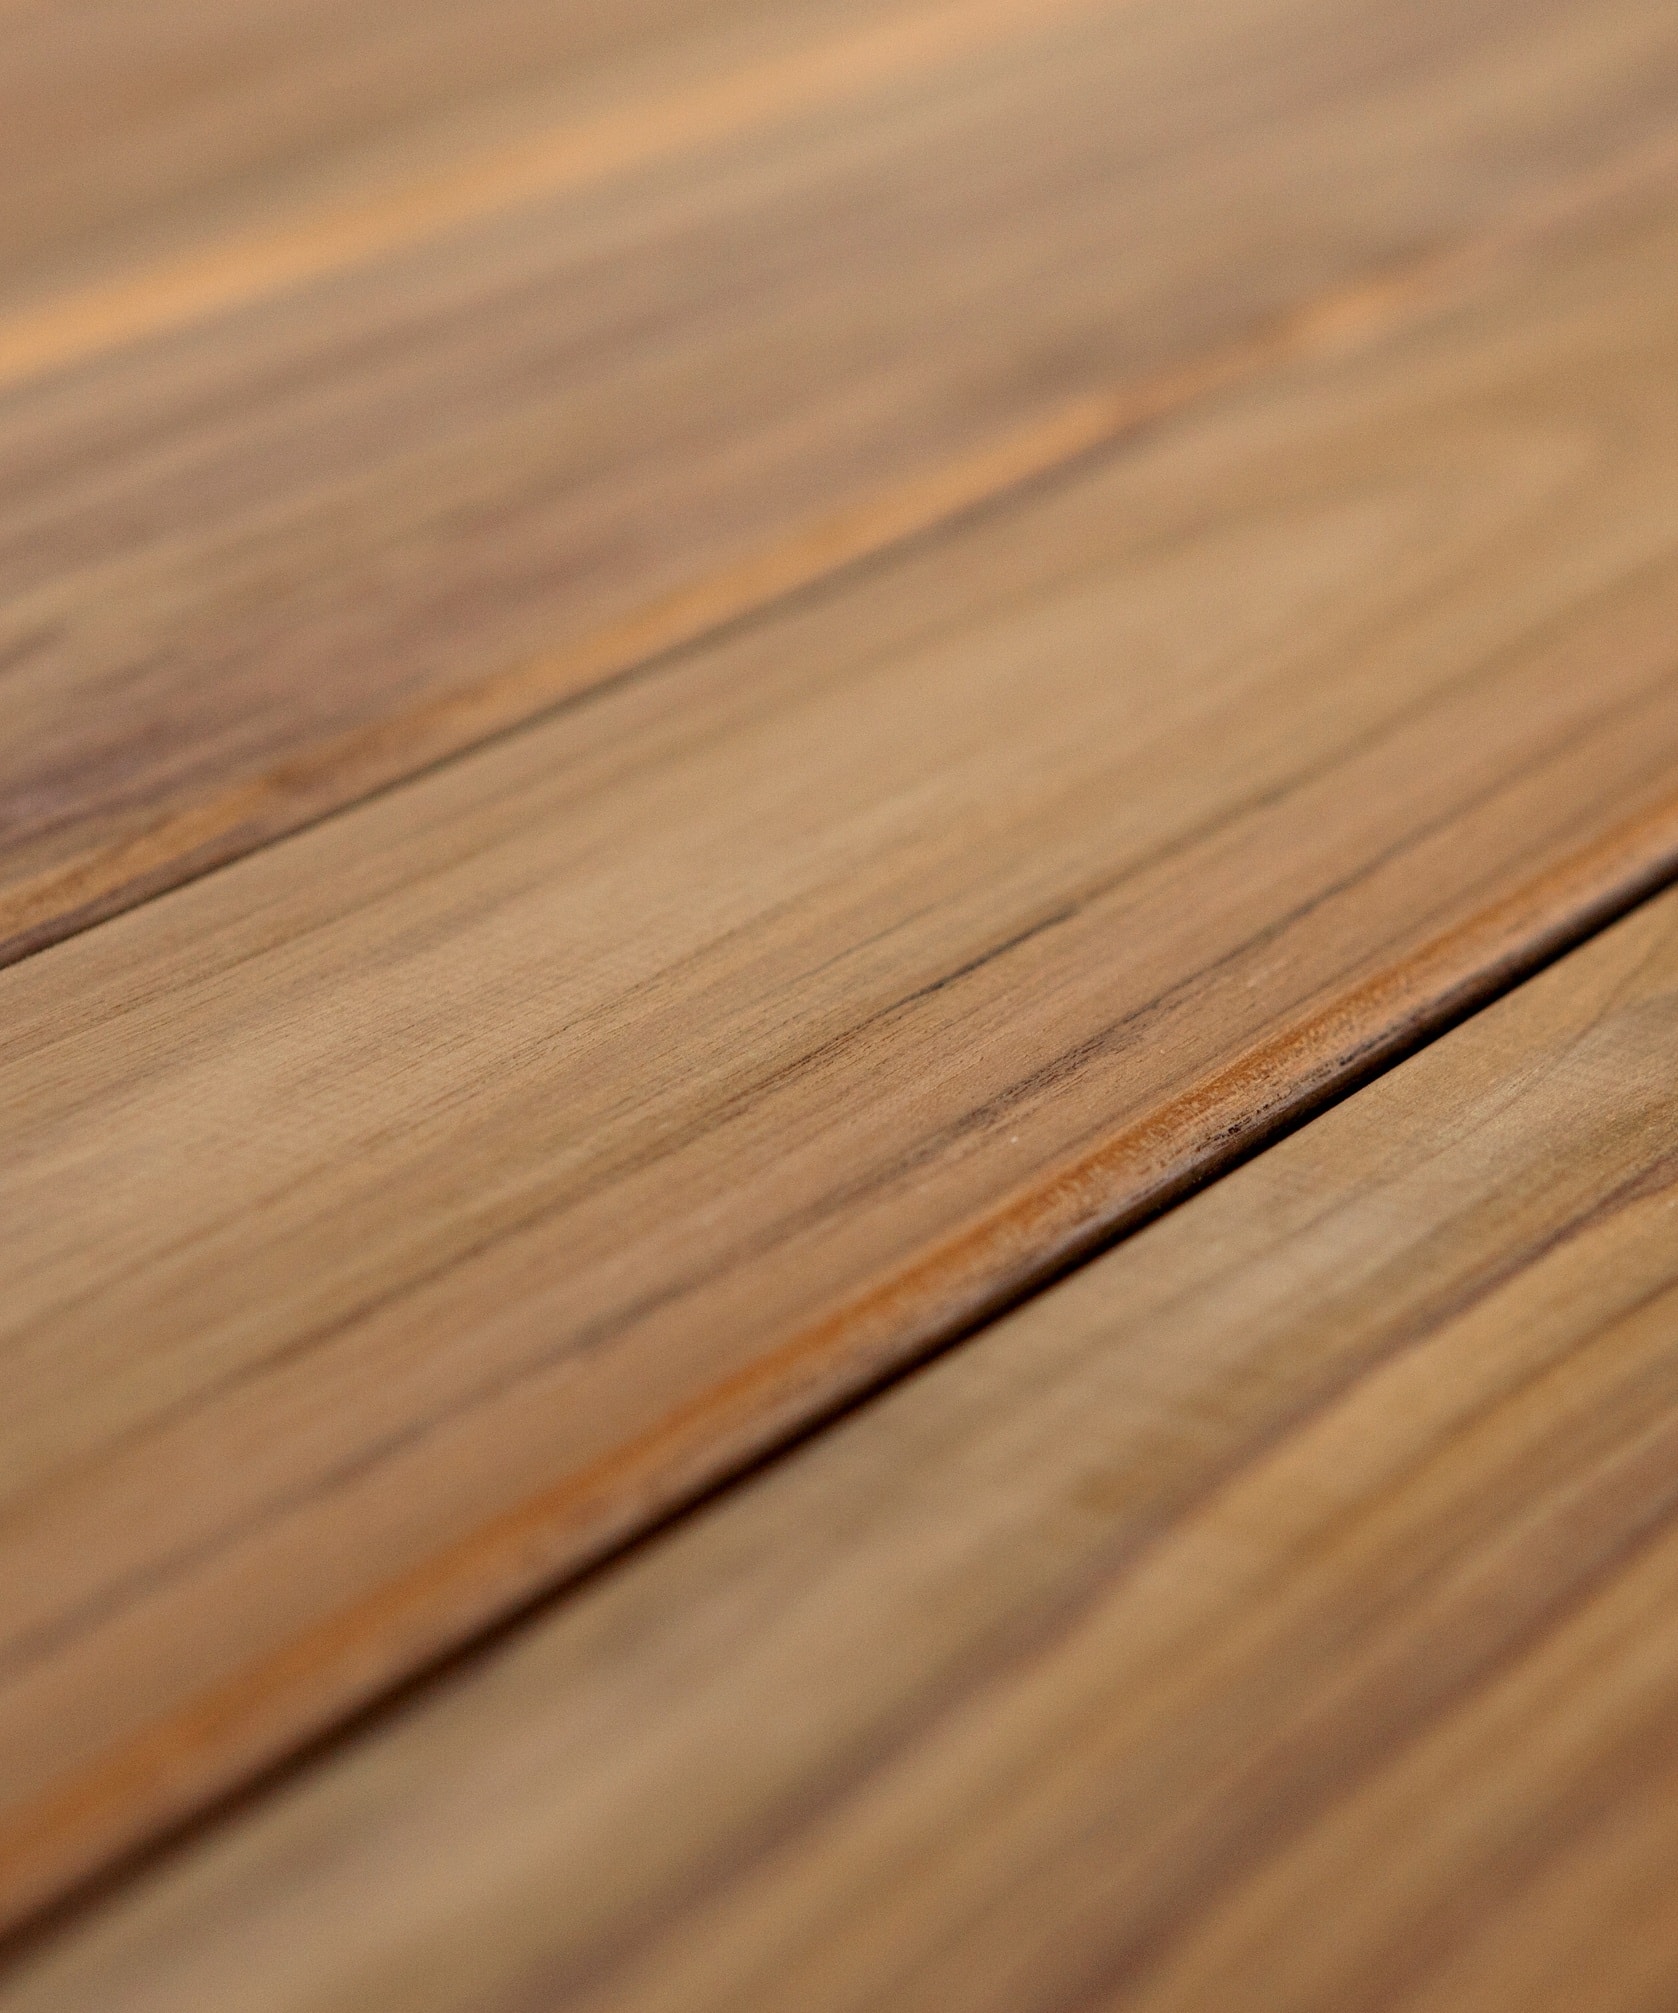 Lame de terrasse en bois - Teck première qualité - Largeur 14 cm